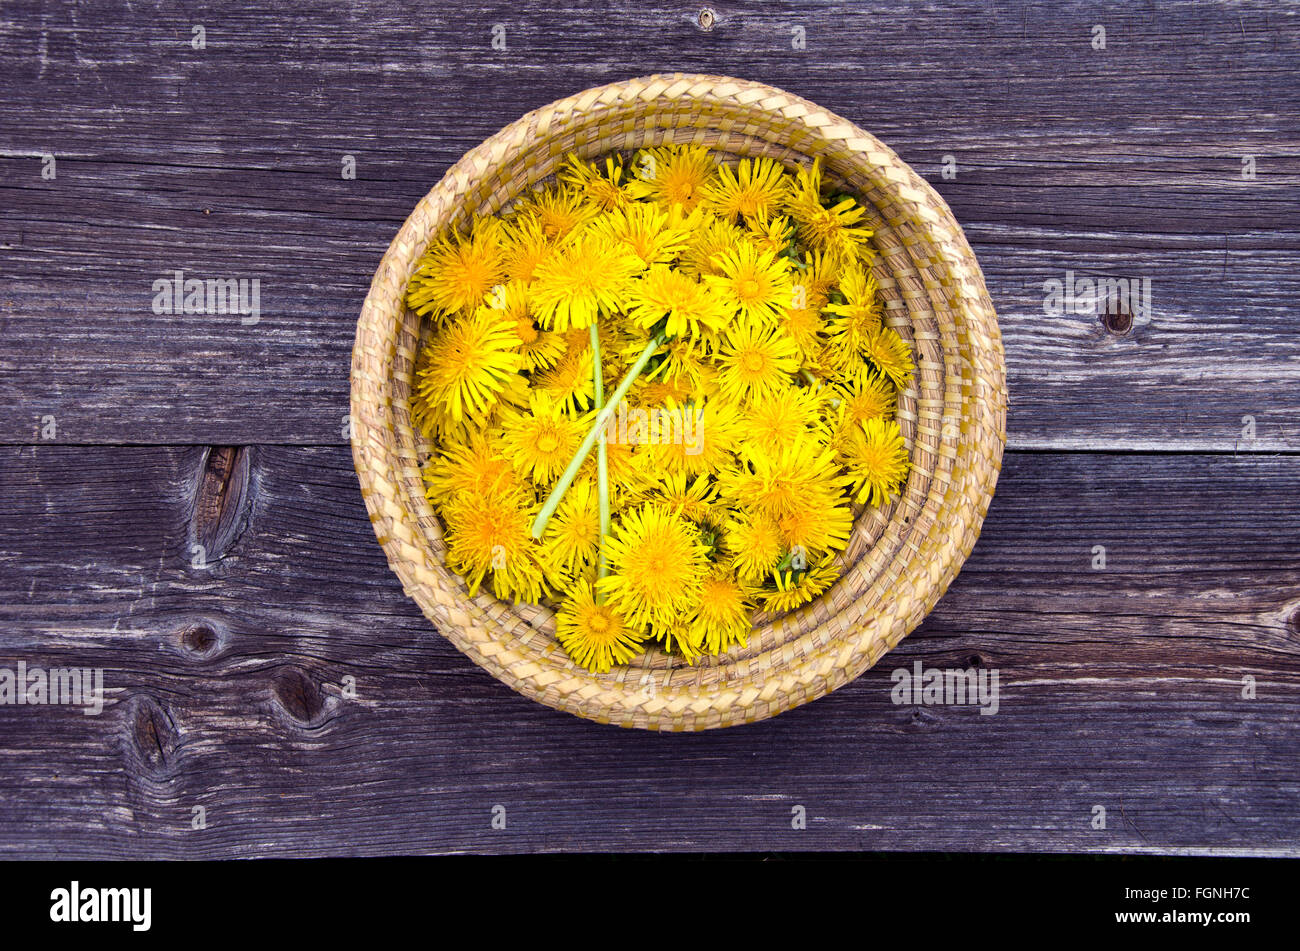 Flores amarillas flores de diente de león recién cosechadas en cesta de mimbre sobre superficie rústica de madera Foto de stock